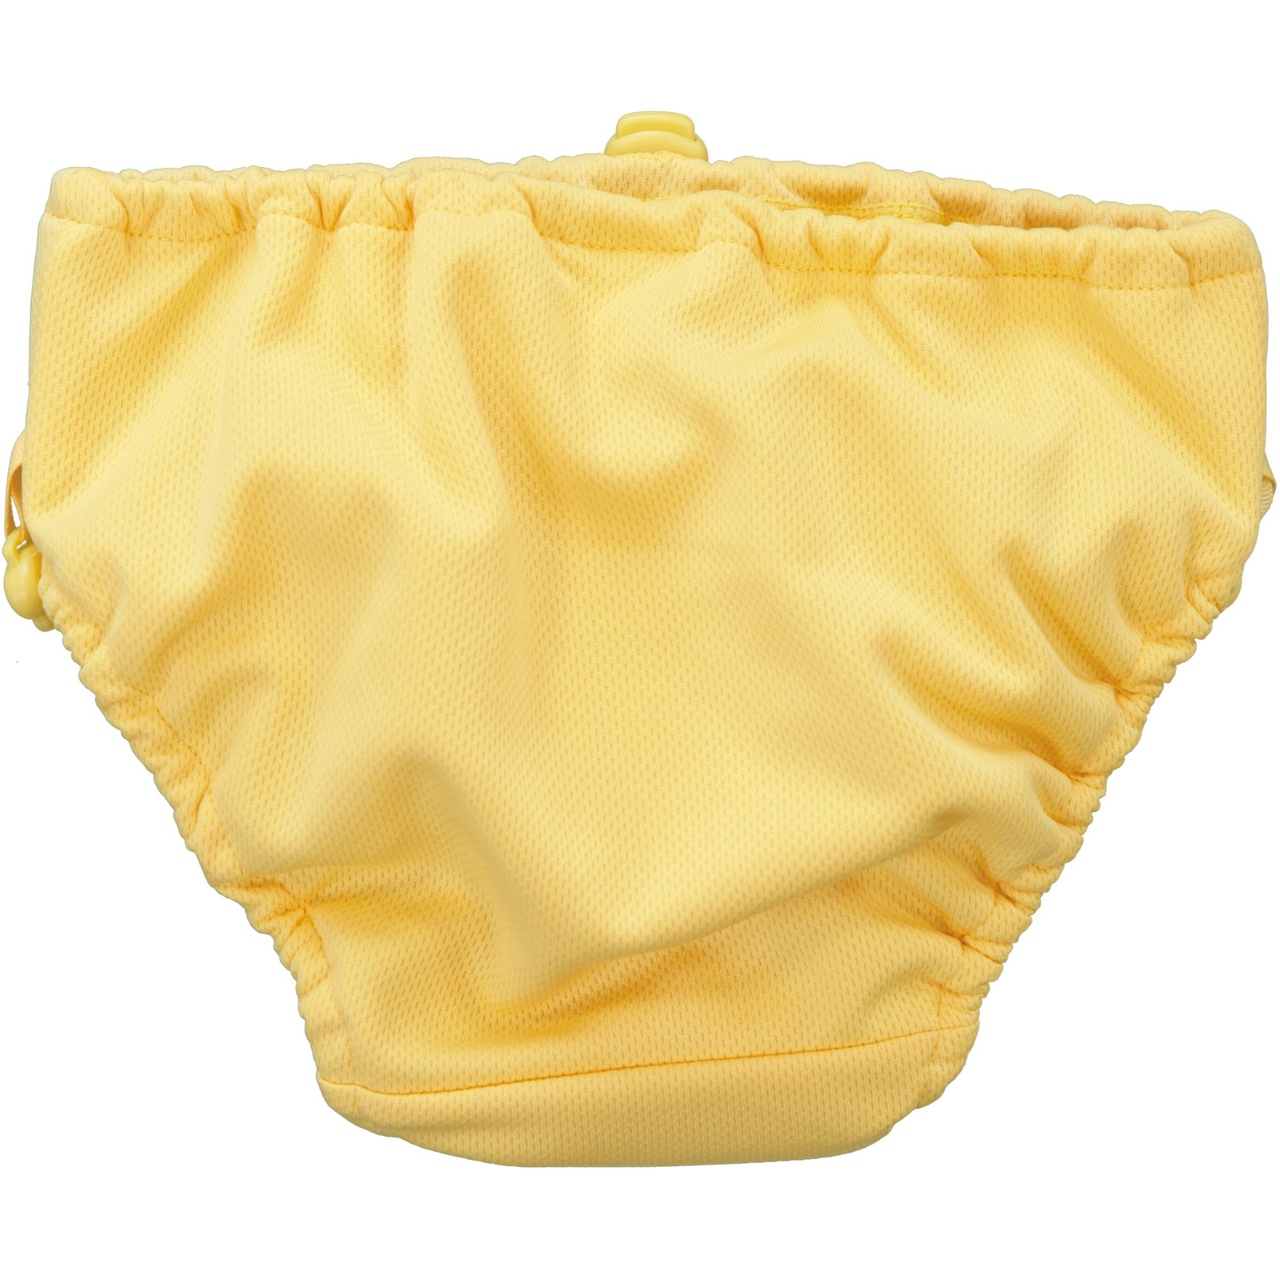 UV Baby swim pant Yellow  62/68